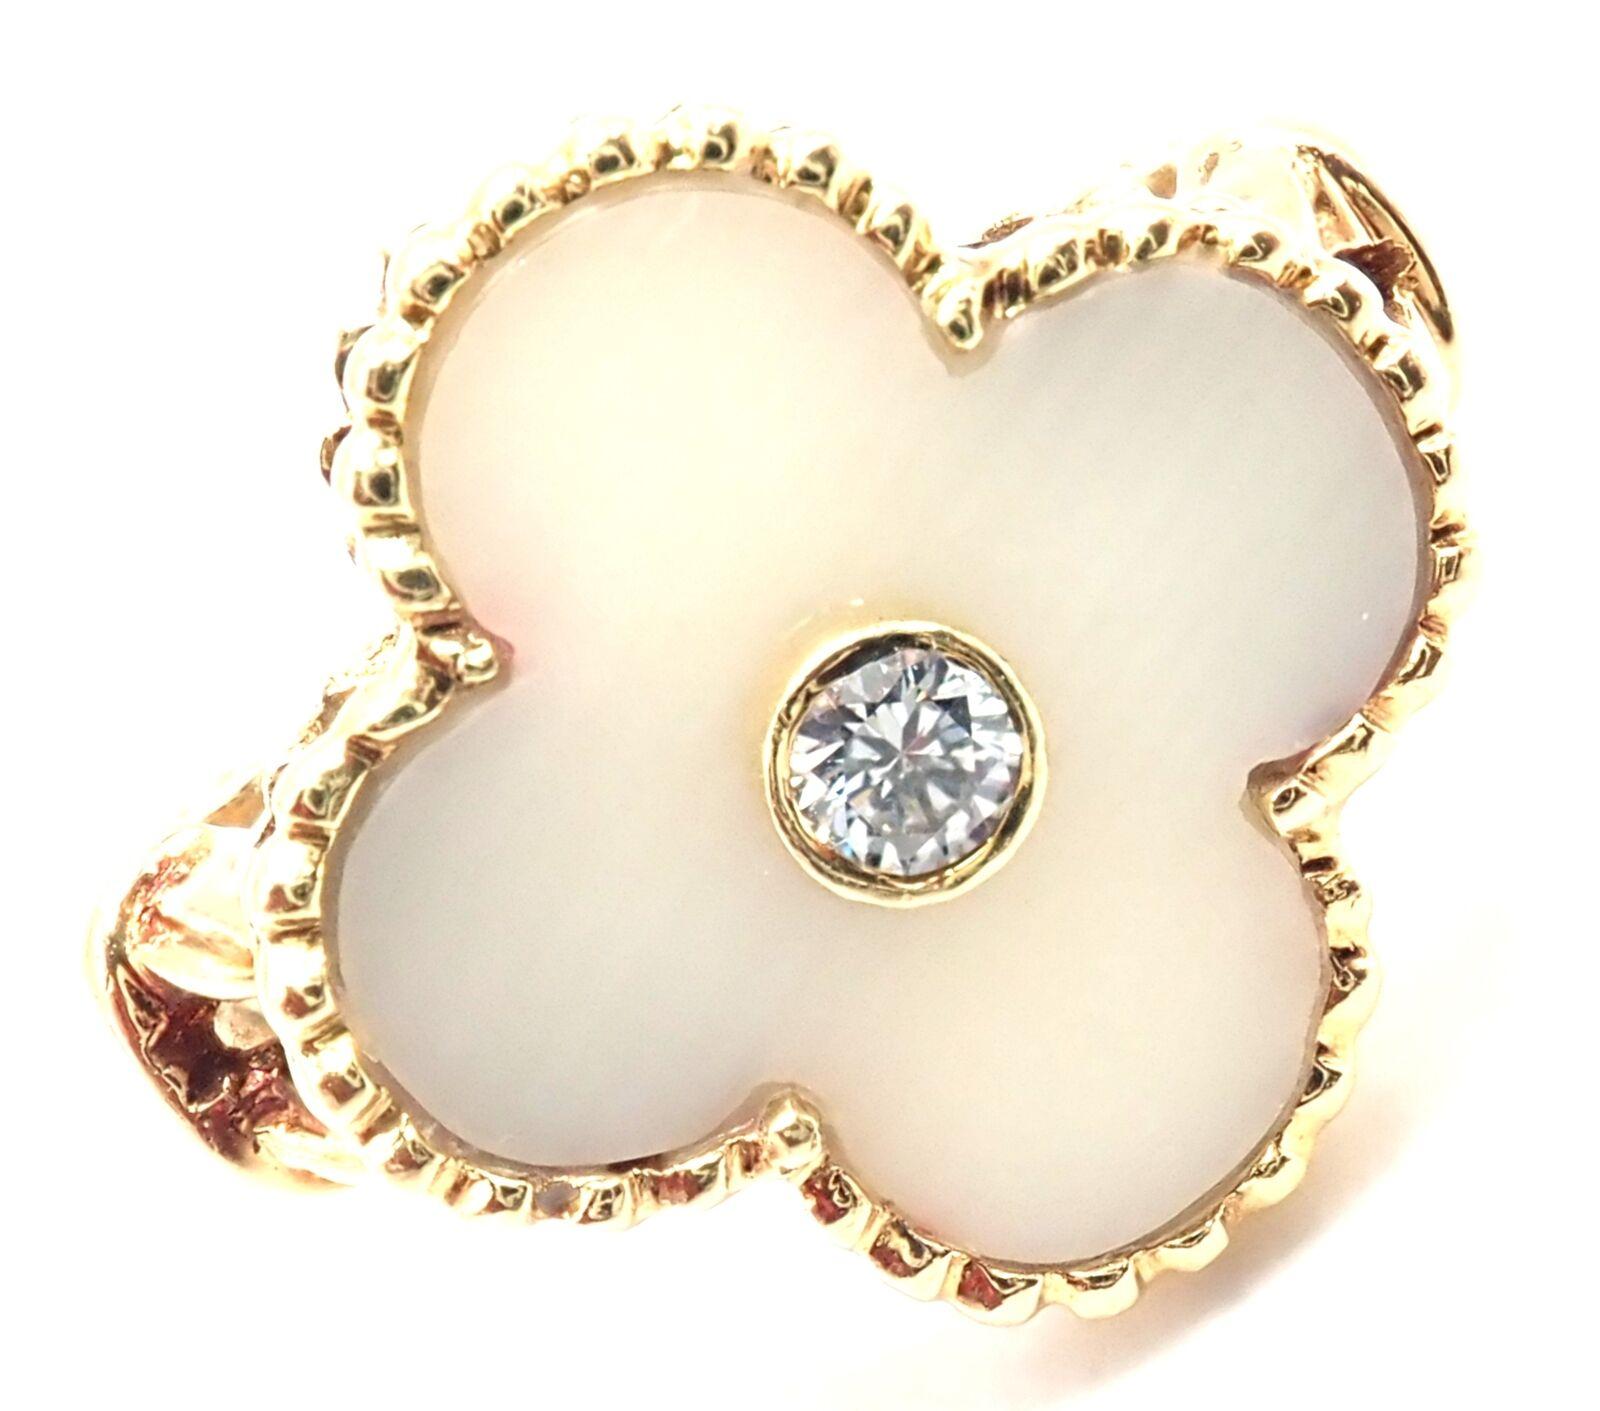 18k Gelbgold Weiß Koralle Diamant Alhambra Ring von Van Cleef & Arpels. 
Mit 1 runden Diamanten im Brillantschliff, Reinheit VVS1, Farbe F. Gesamtgewicht der Diamanten: 0,06ct
Alhambra geschliffene weiße Koralle.
Dieser Ring wird mit einem